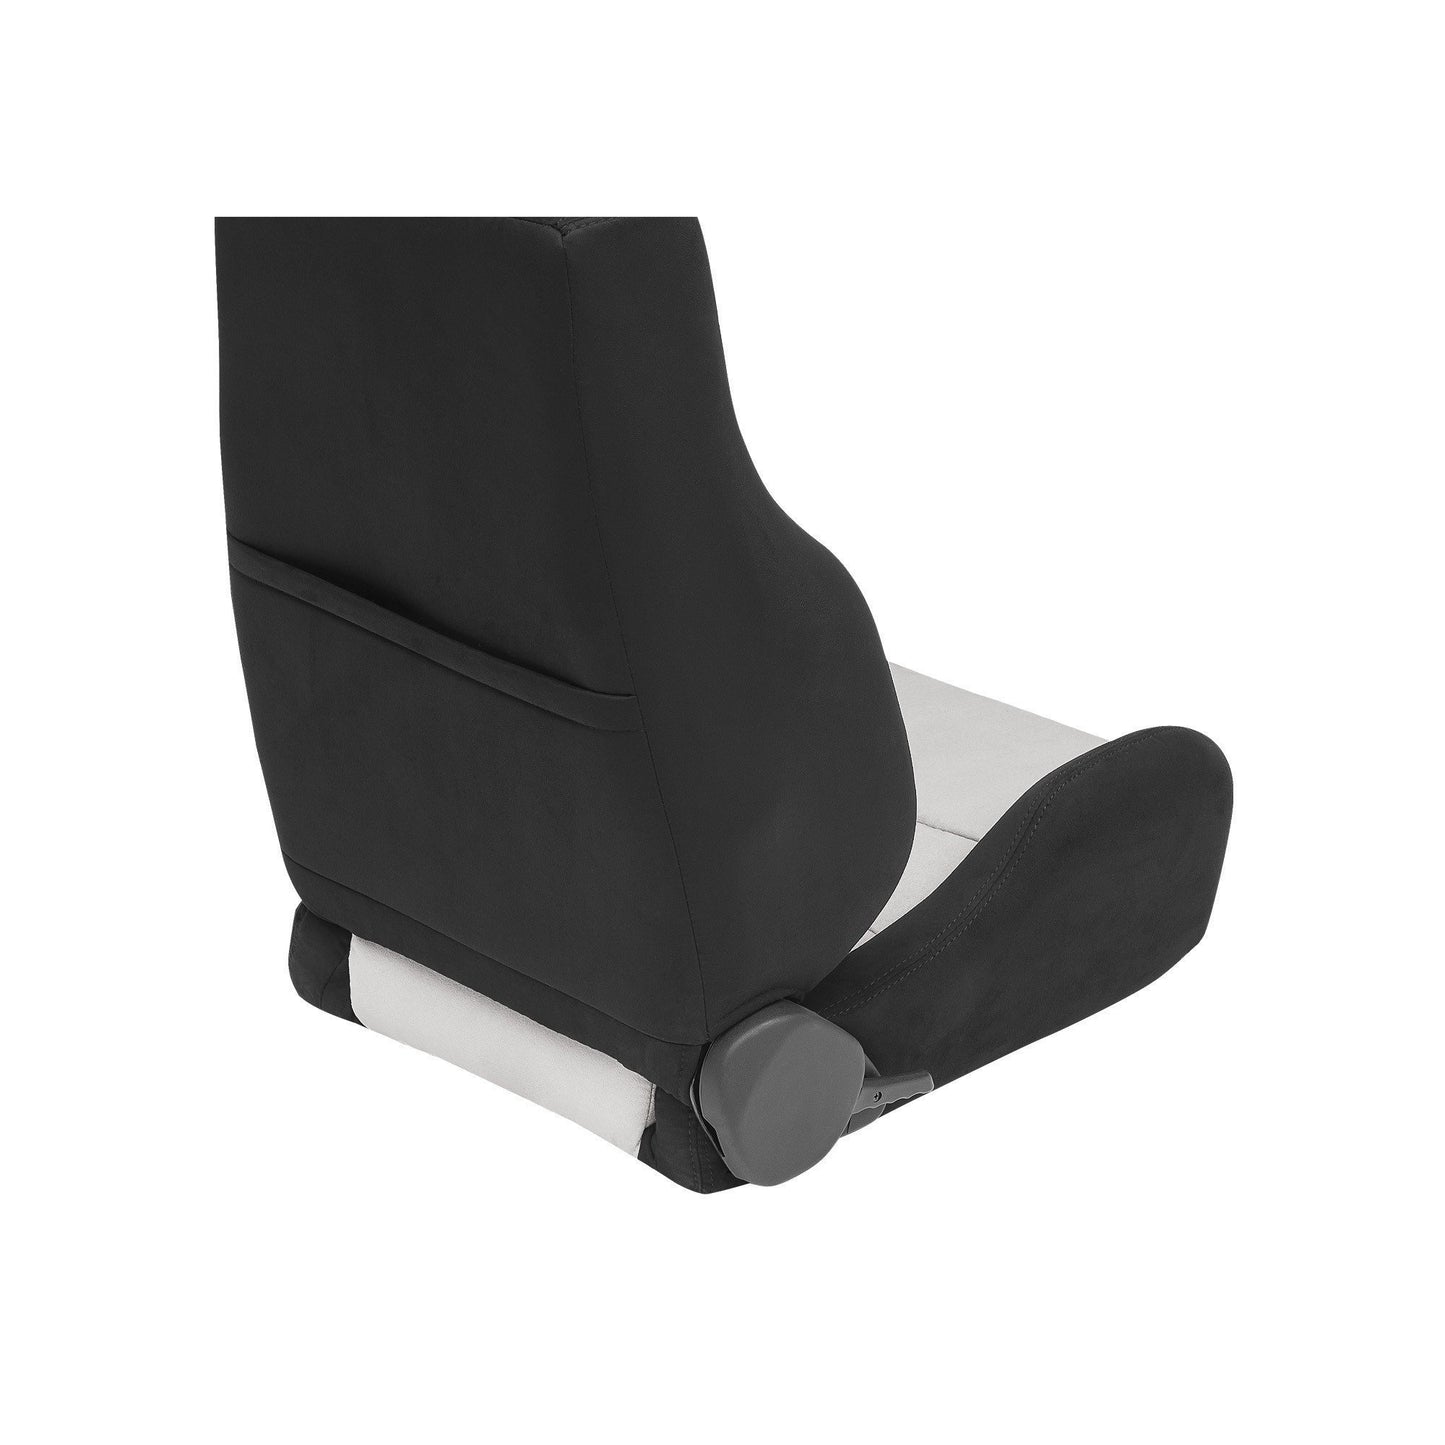 Corbeau GTSII Seat Black Leather - Universal-CBU-L20301PR-CBU-L20301PR-Seats-Corbeau-JDMuscle